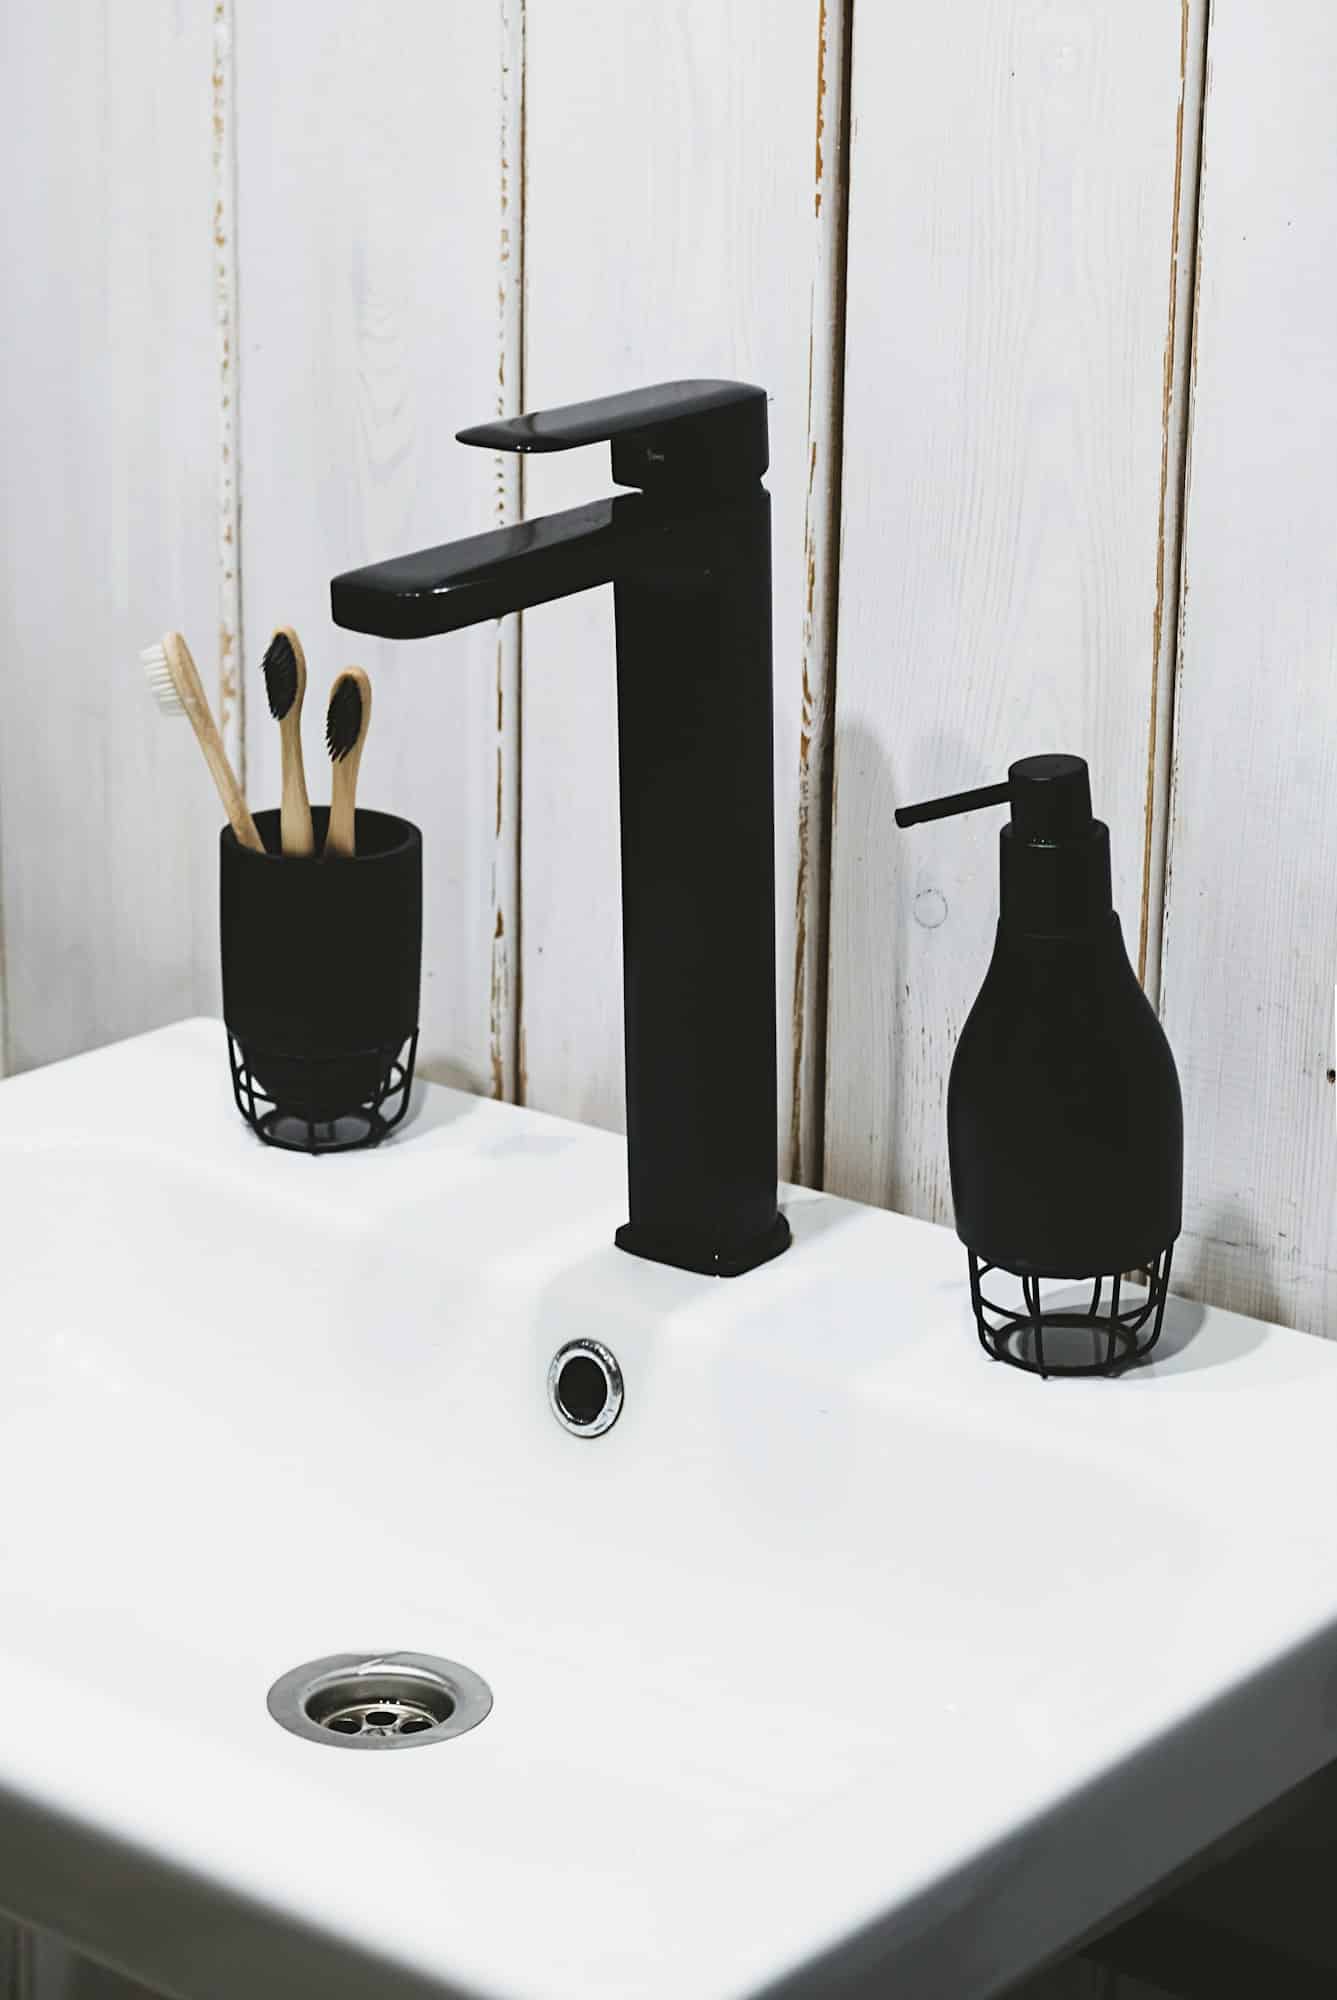 Robinet salle de bain : Vous pouvez miser sur un modèle en acier brossé